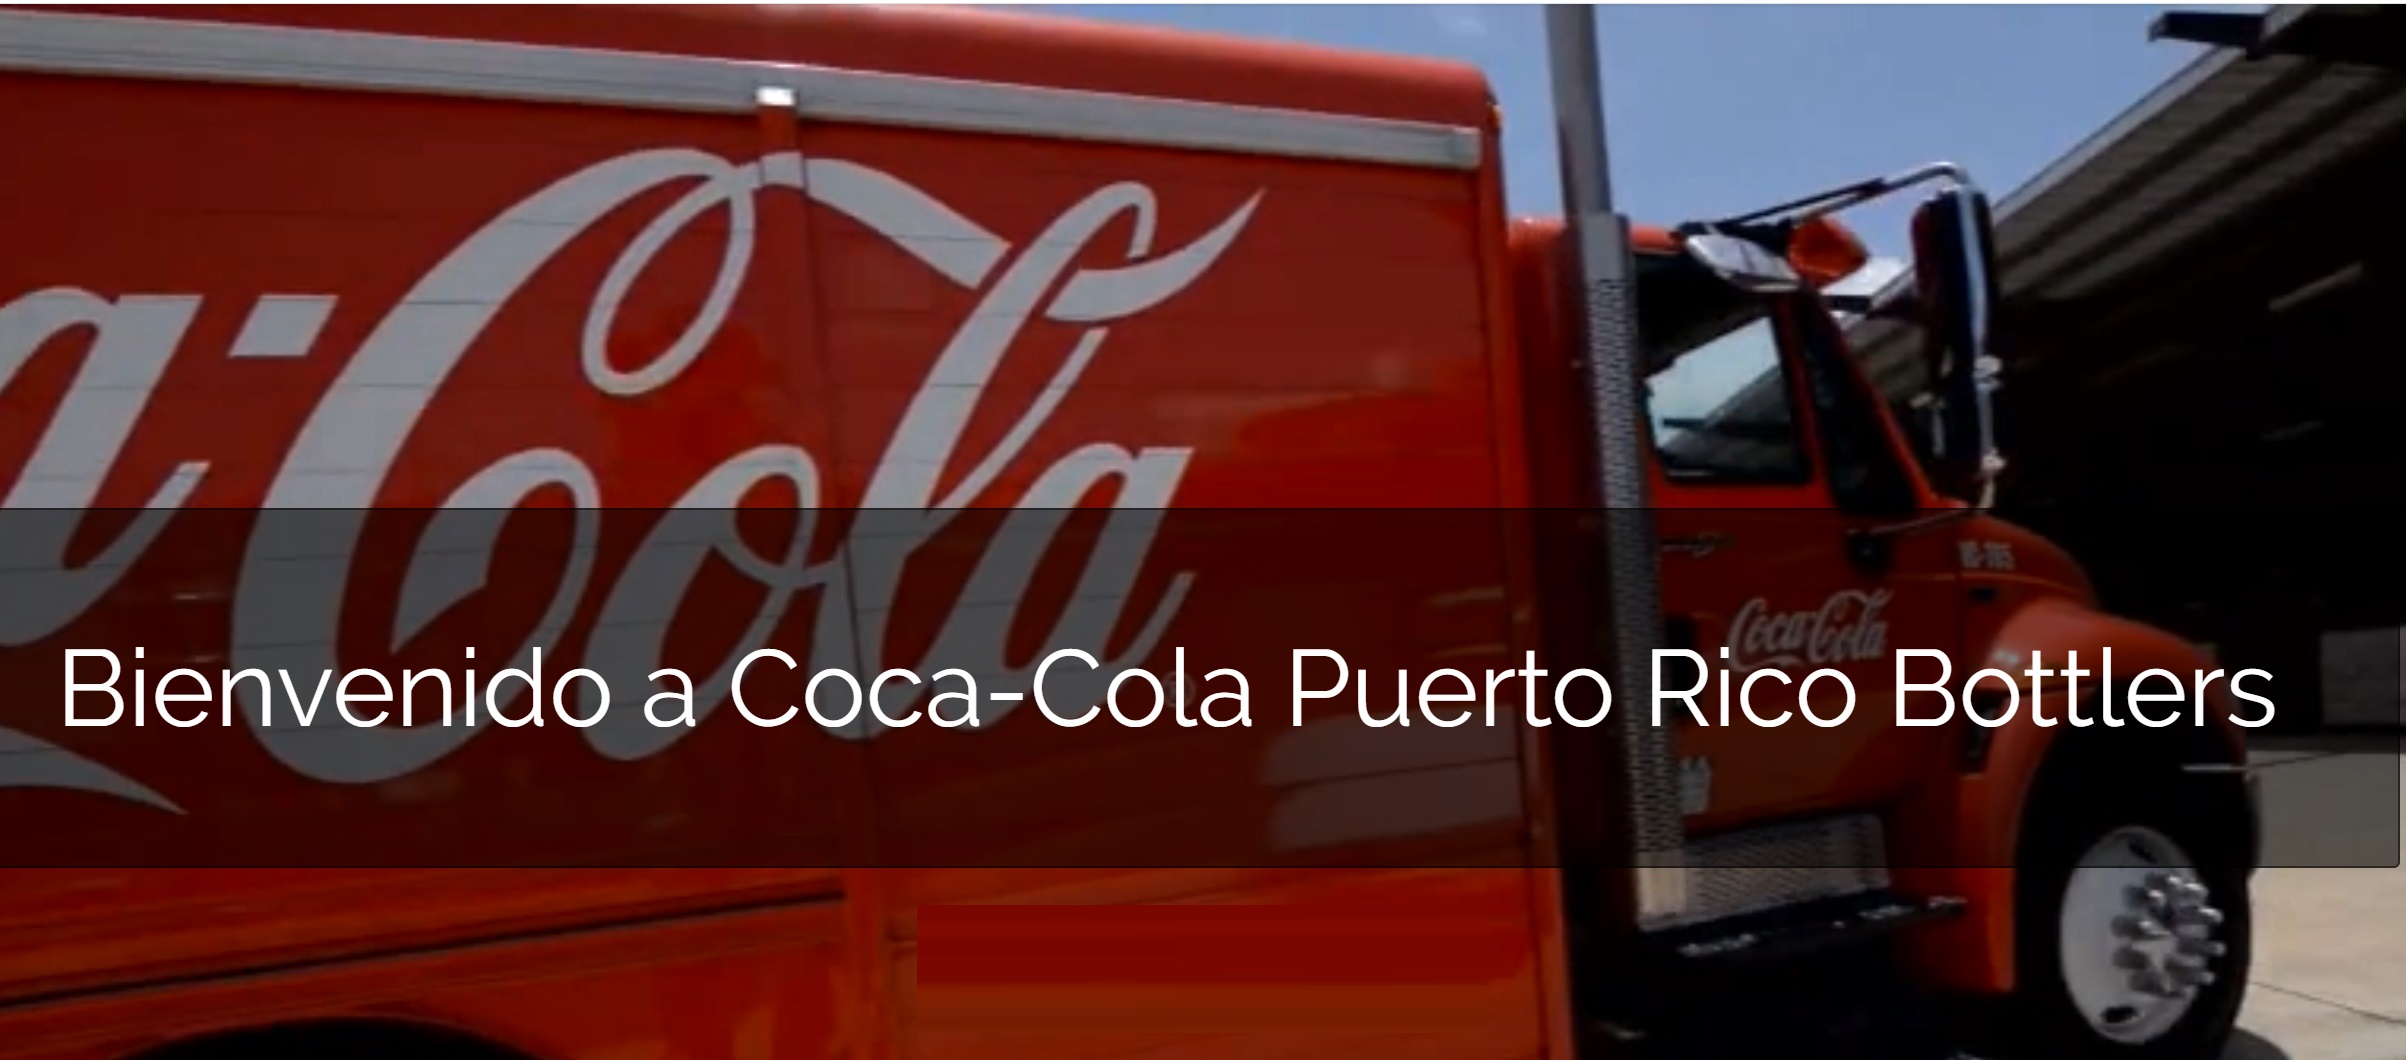 coca-cola, puerto rico, bottlers, programapublicidad,